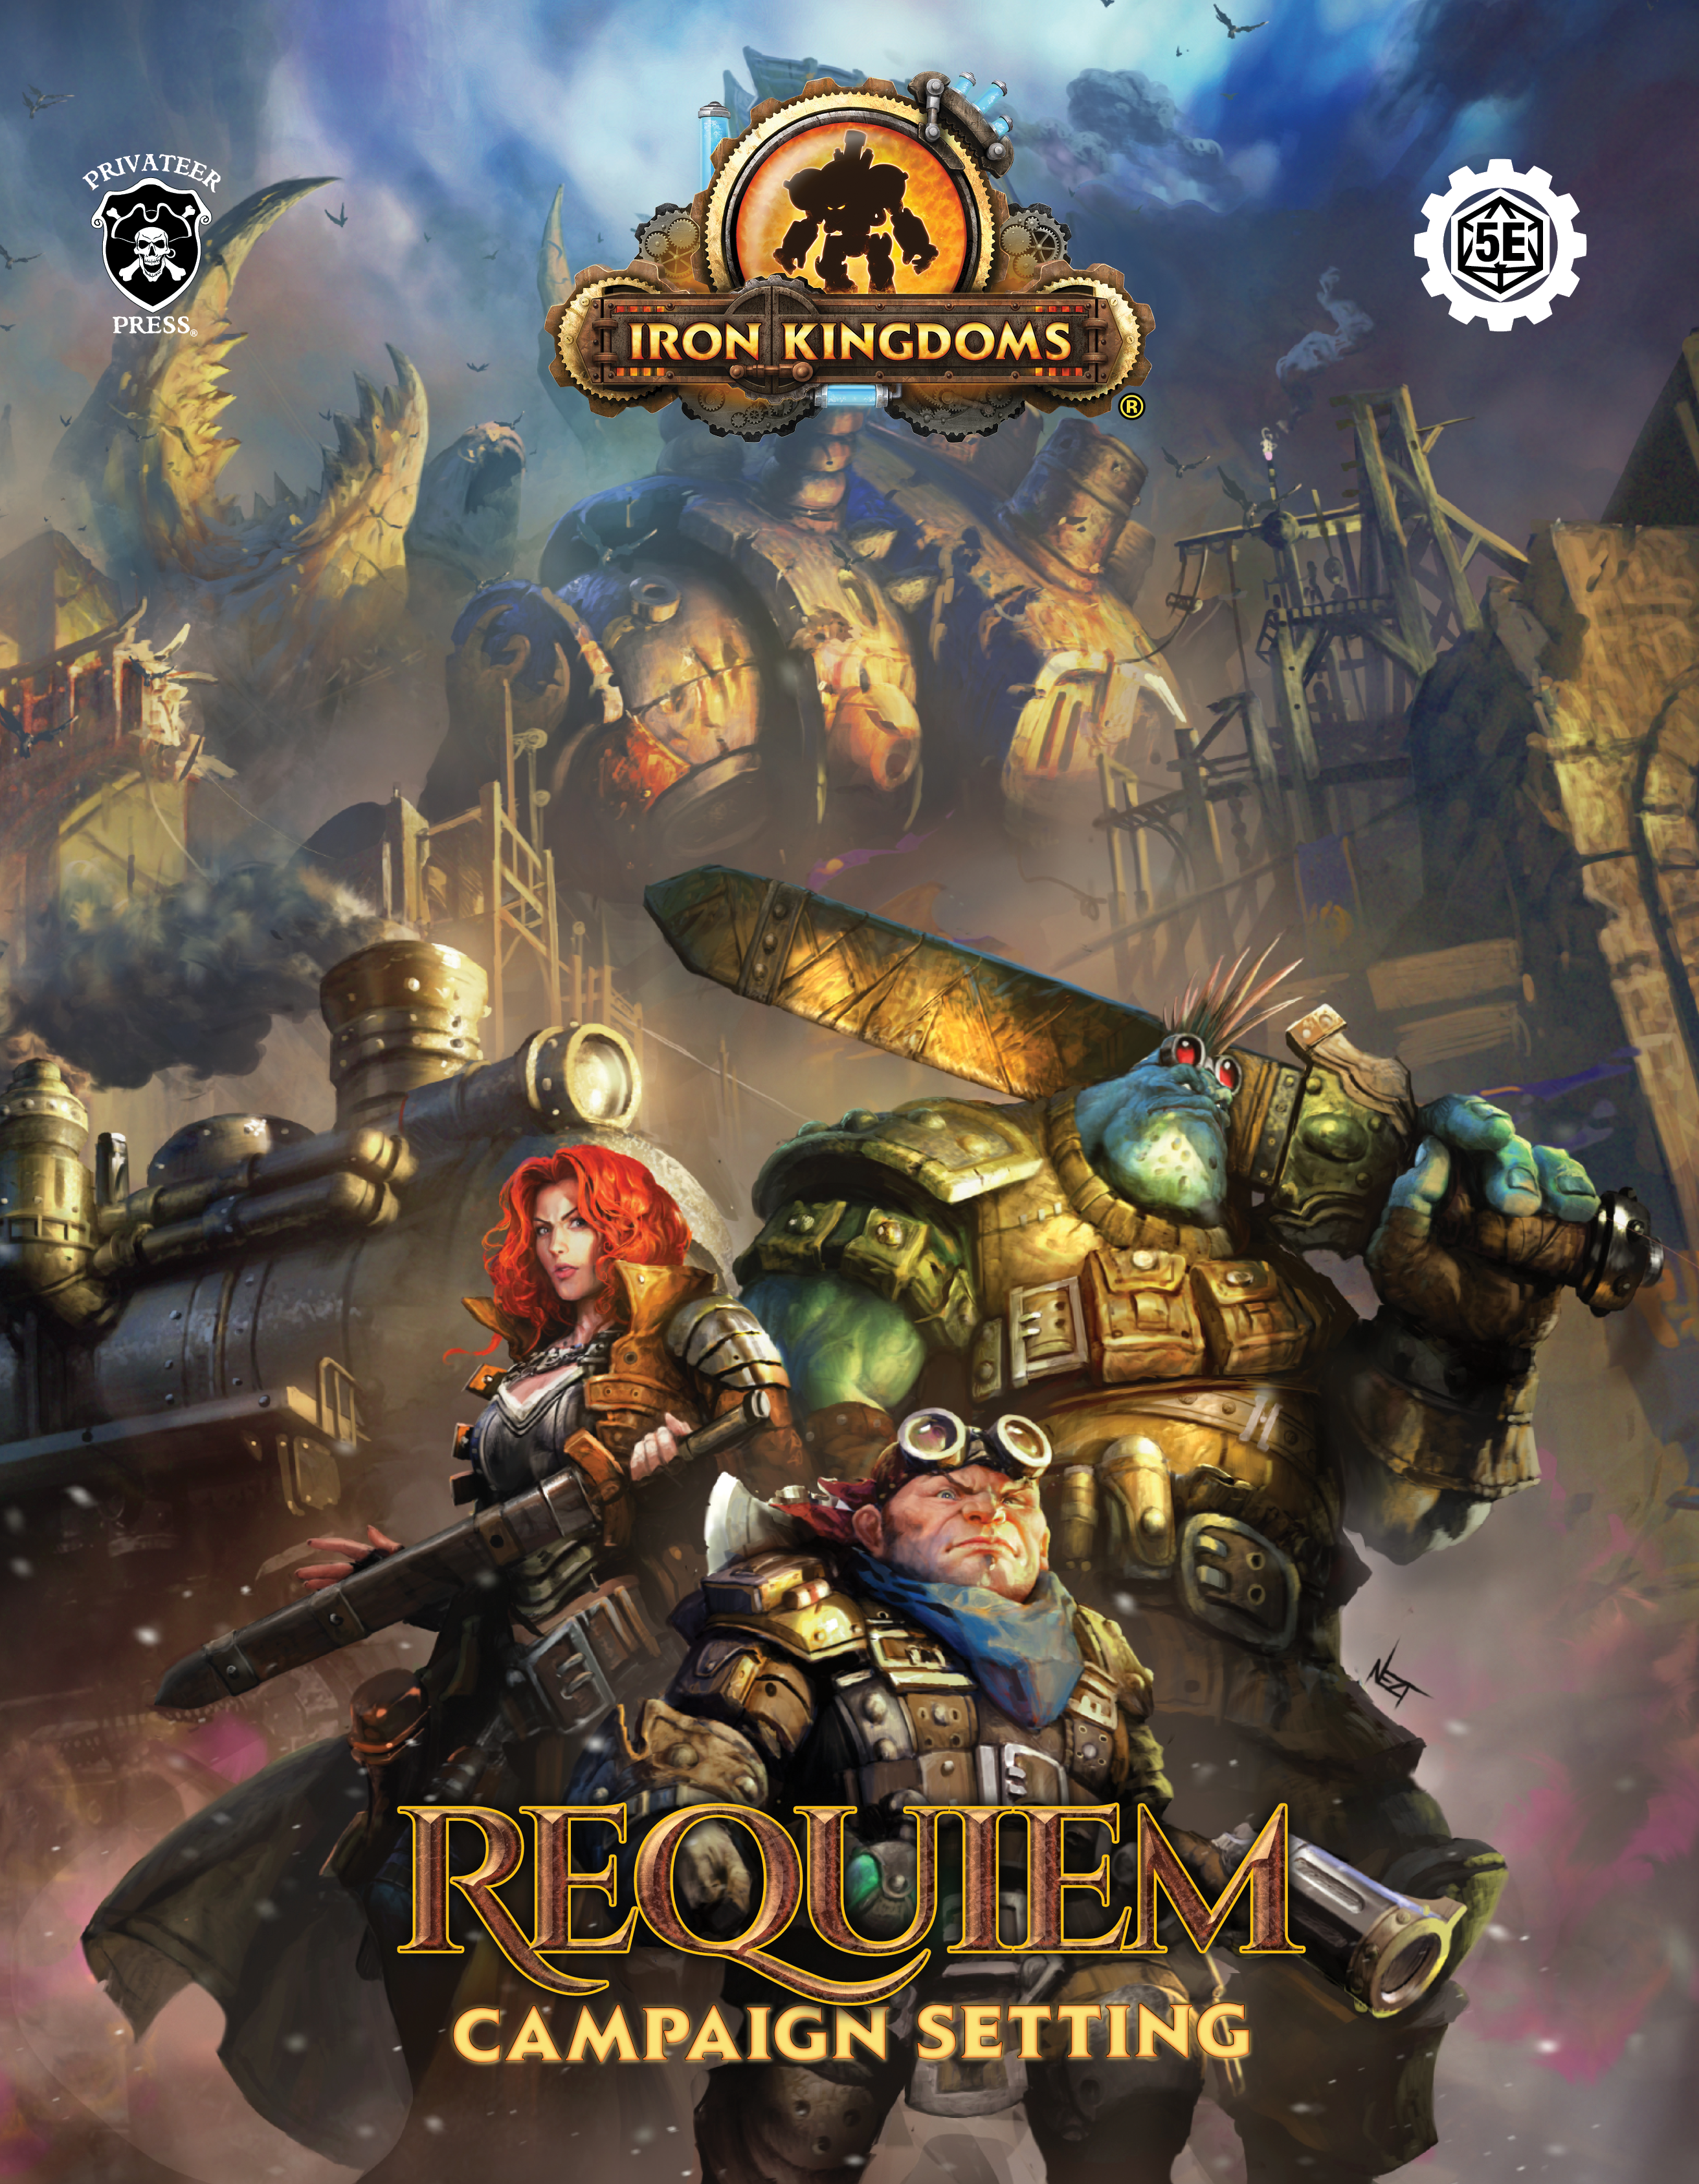 D&D 5E - Iron Kingdoms Requiem for D&D - Kickstarter 26th January